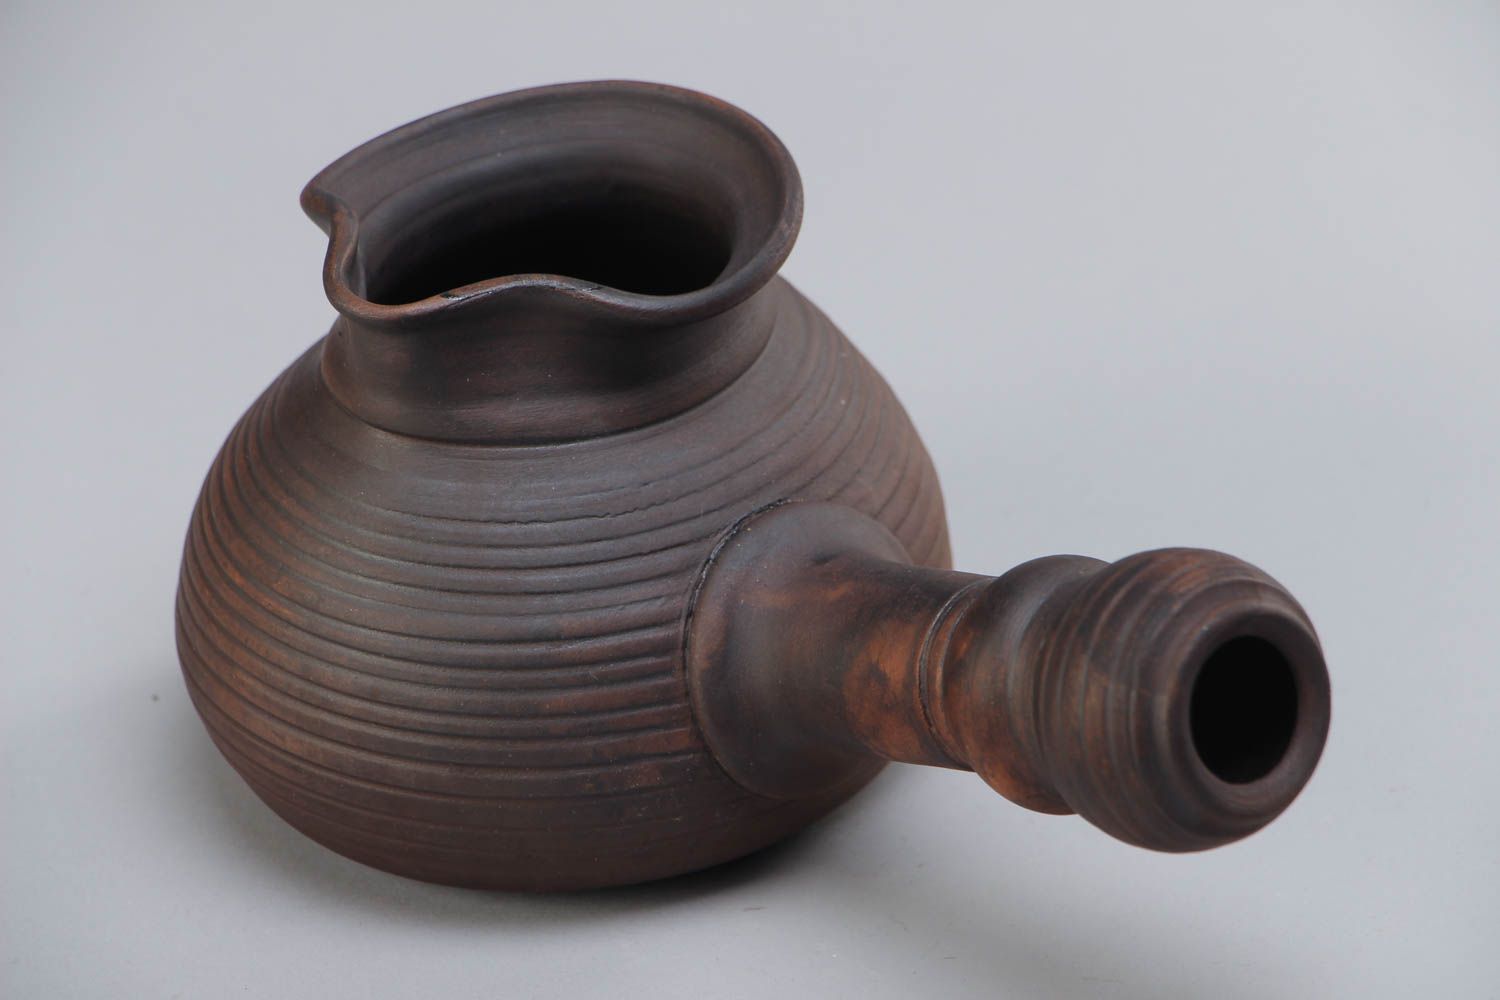 Dunkle ungewöhnliche türkische Kaffeekanne aus Keramik Handarbeit braun foto 2